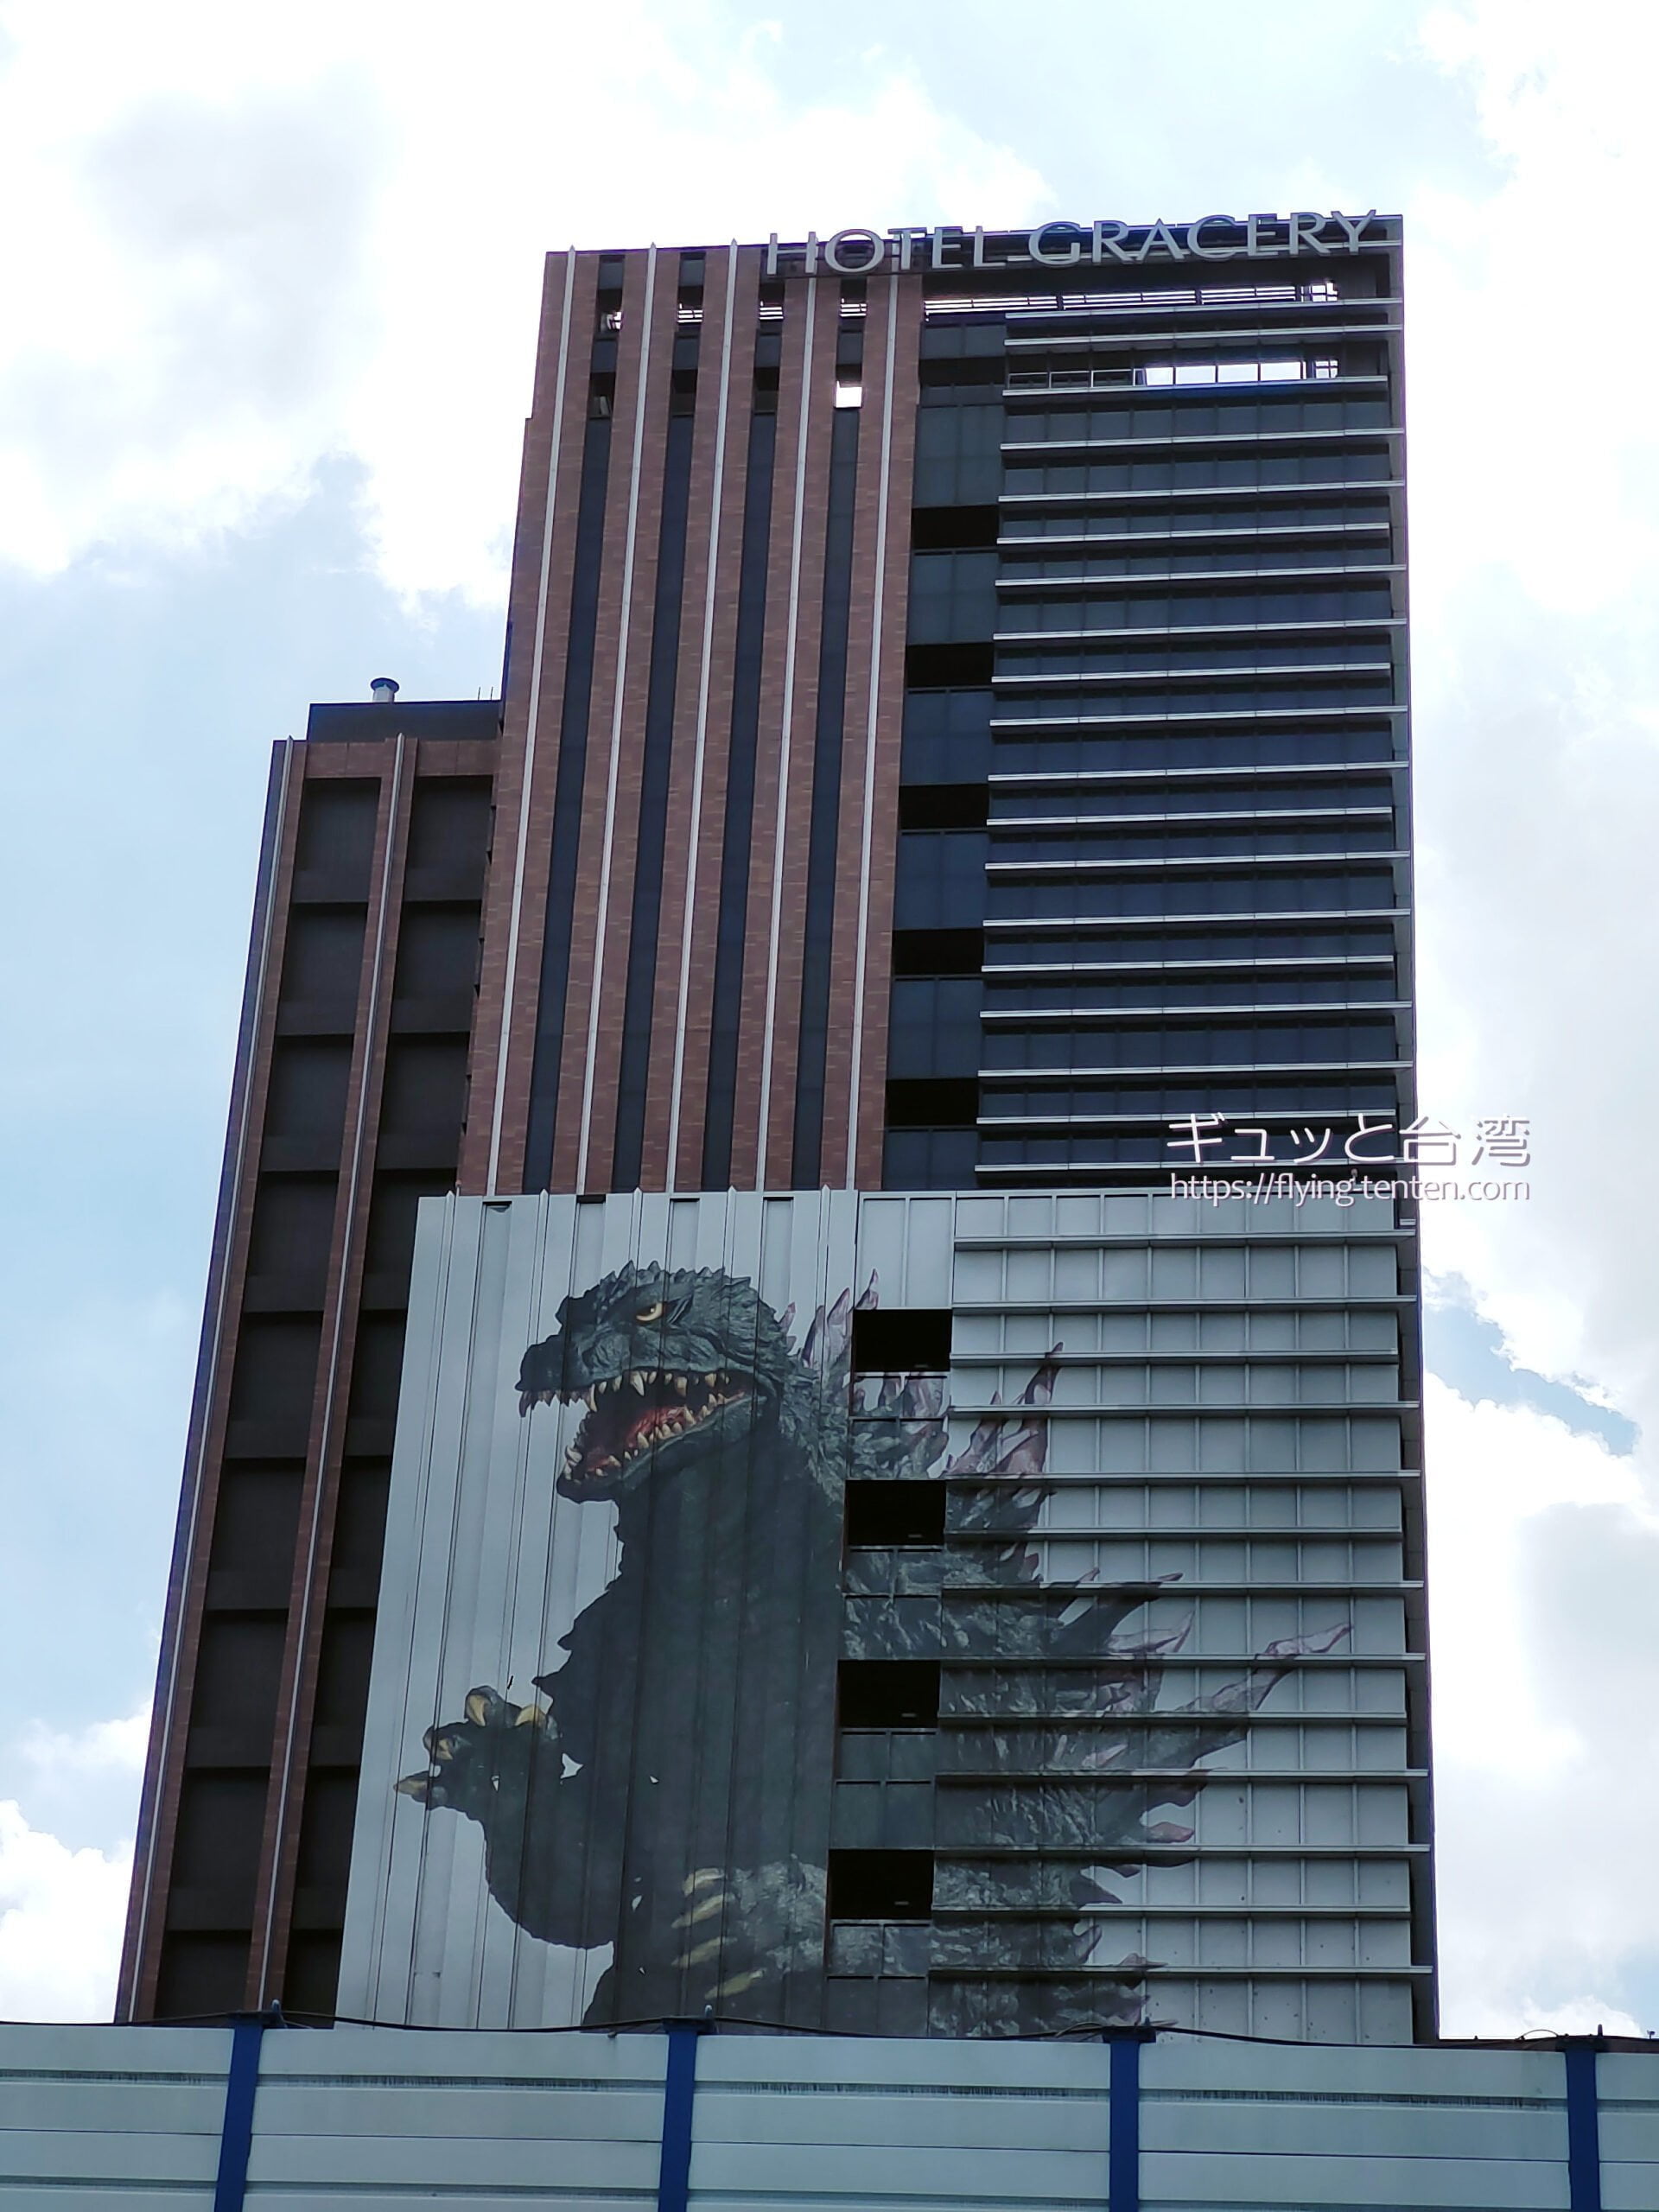 ホテルグレイスリー台北のゴジラ